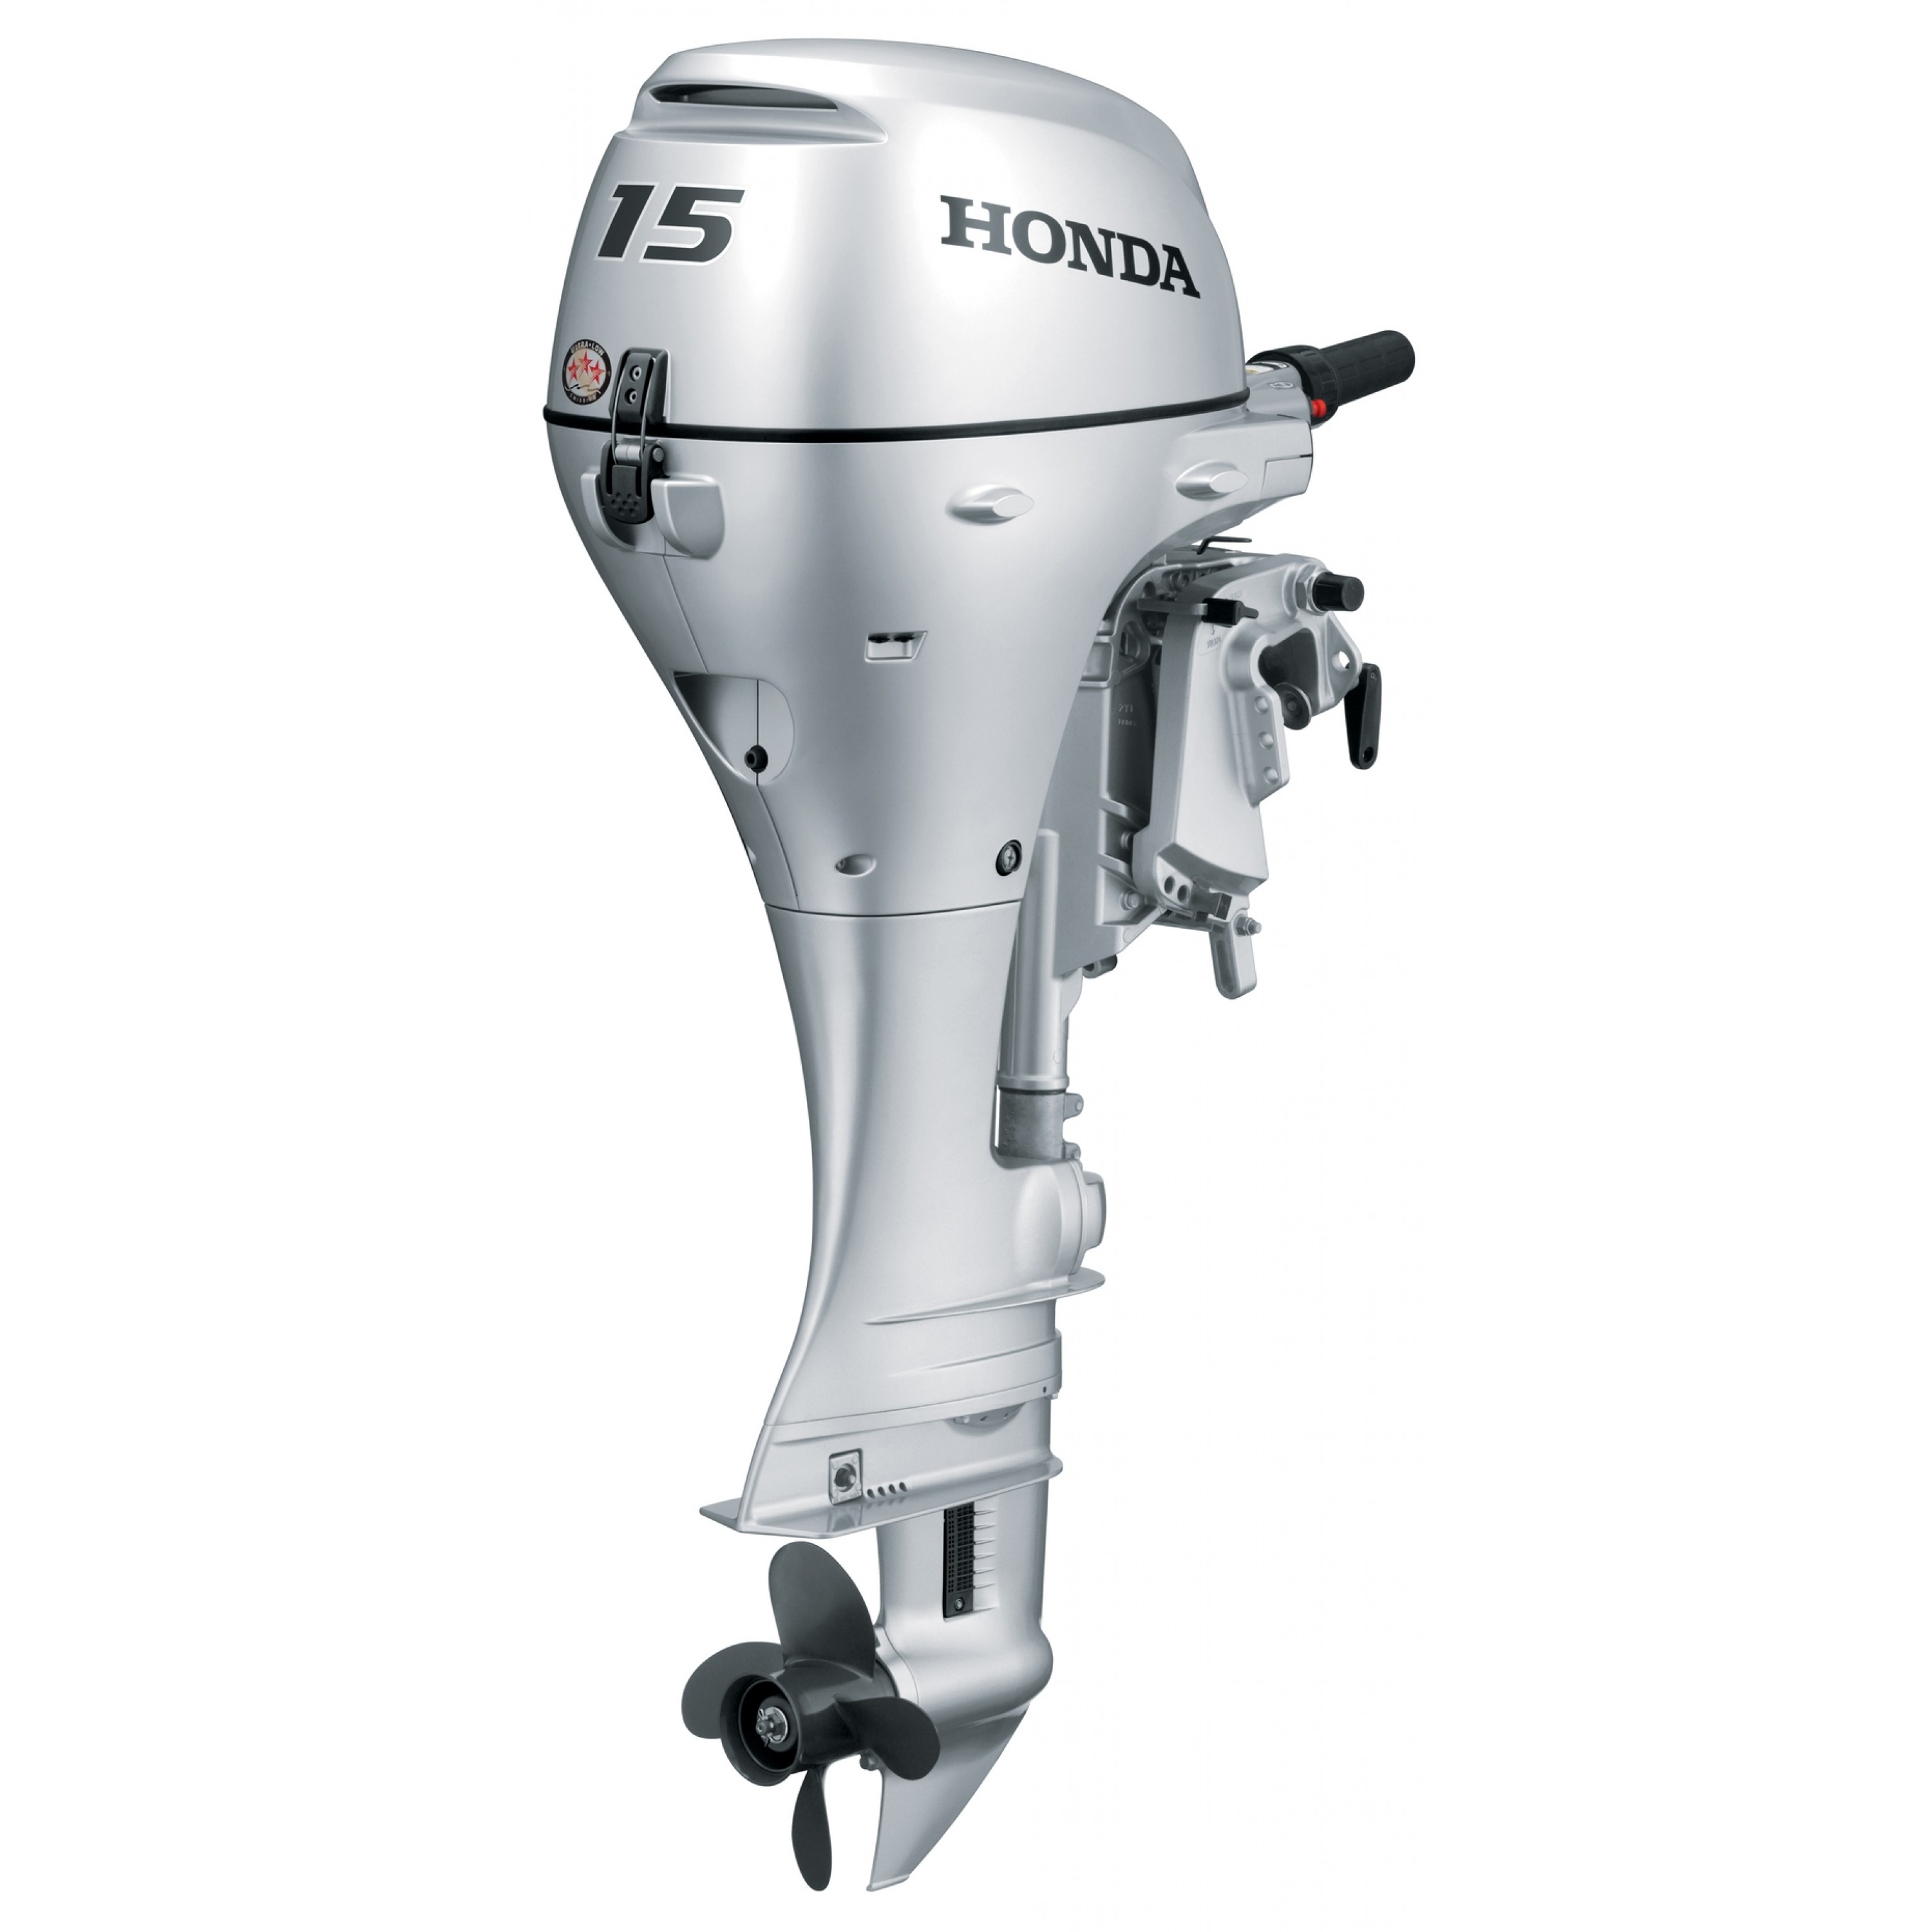 15 HP Honda Outboard Motor, BF15DK3SHSC